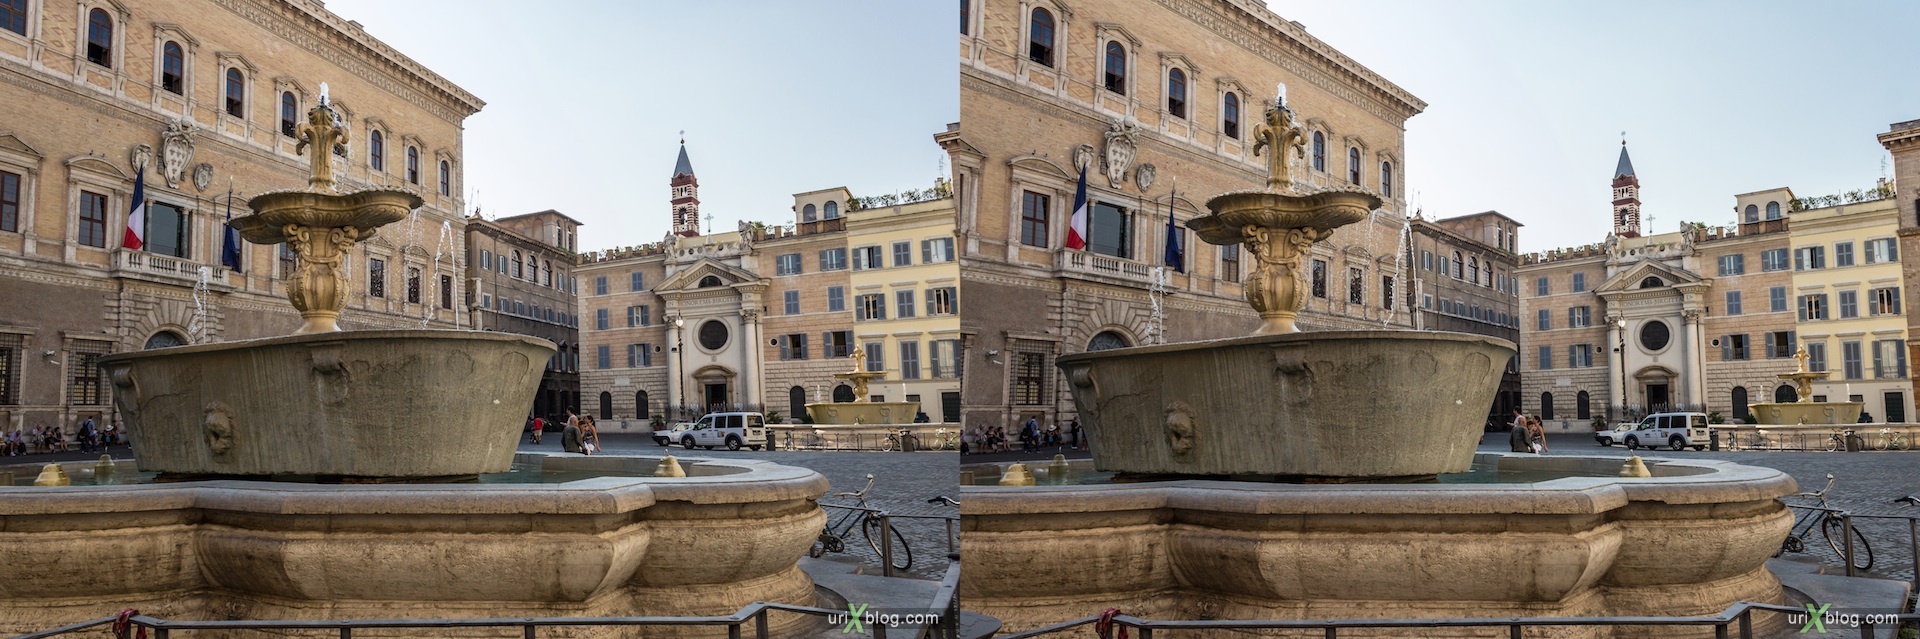 2012, фонтан, площадь Farnese, Рим, Италия, 3D, перекрёстные стереопары, стерео, стереопара, стереопары